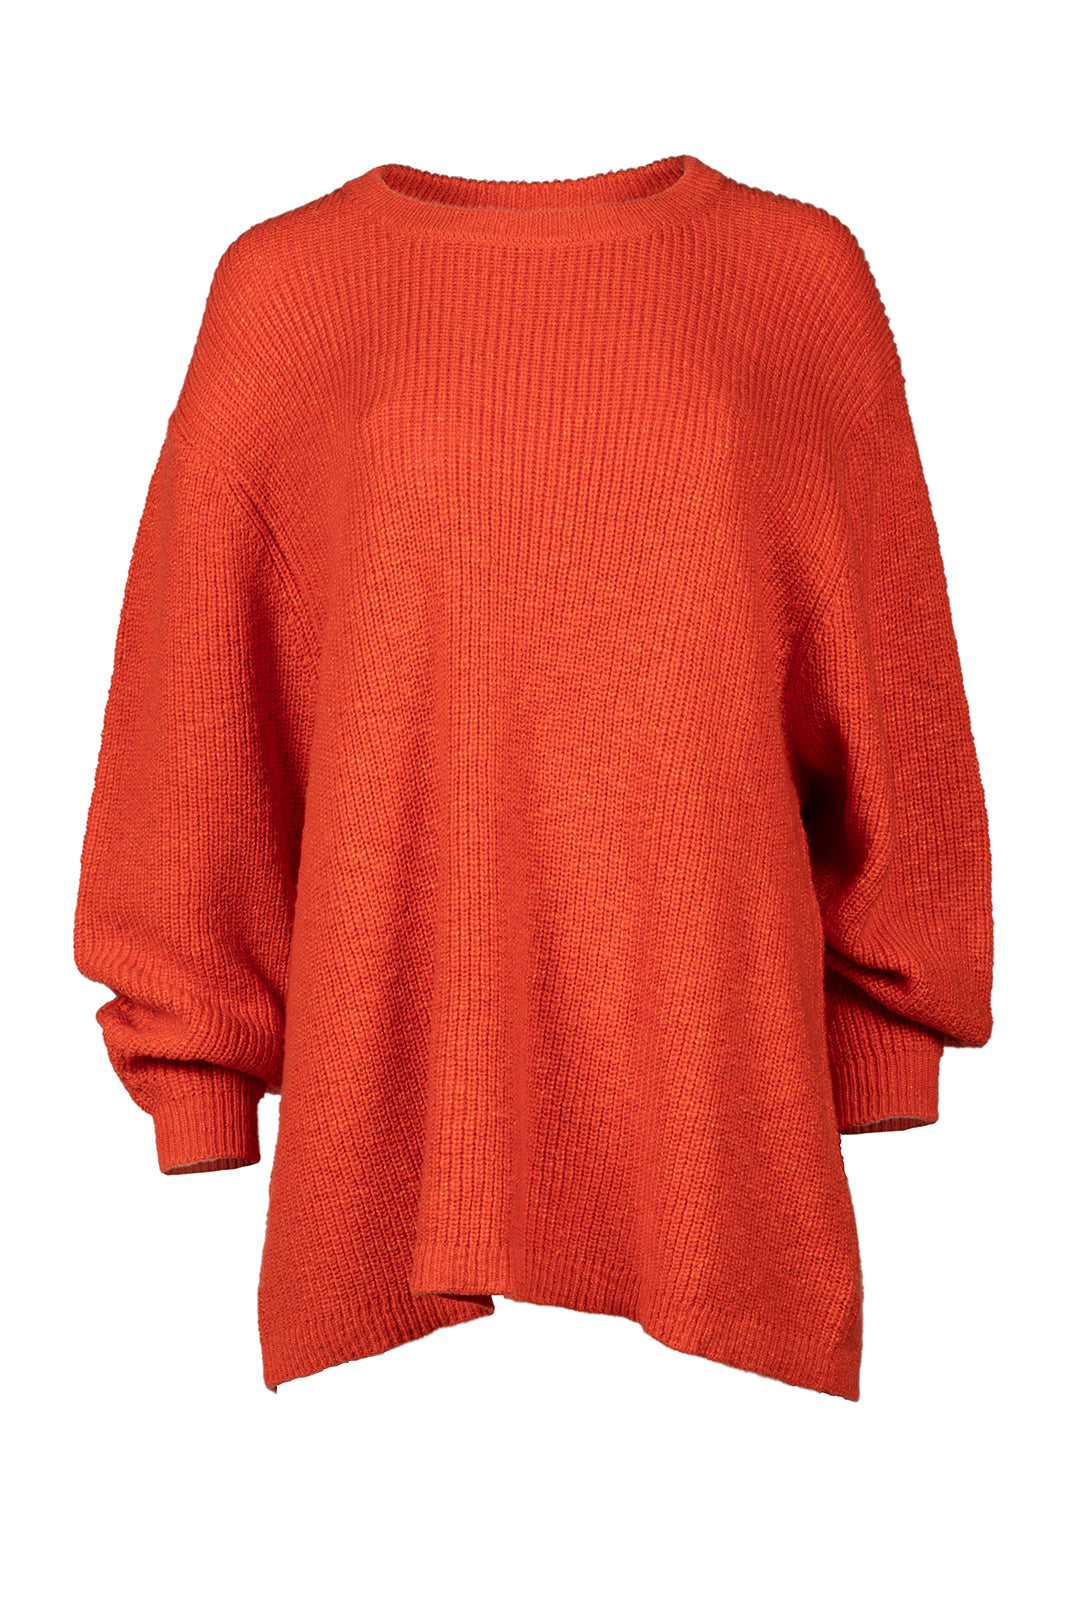 Long sleeve red sweater | Melianne